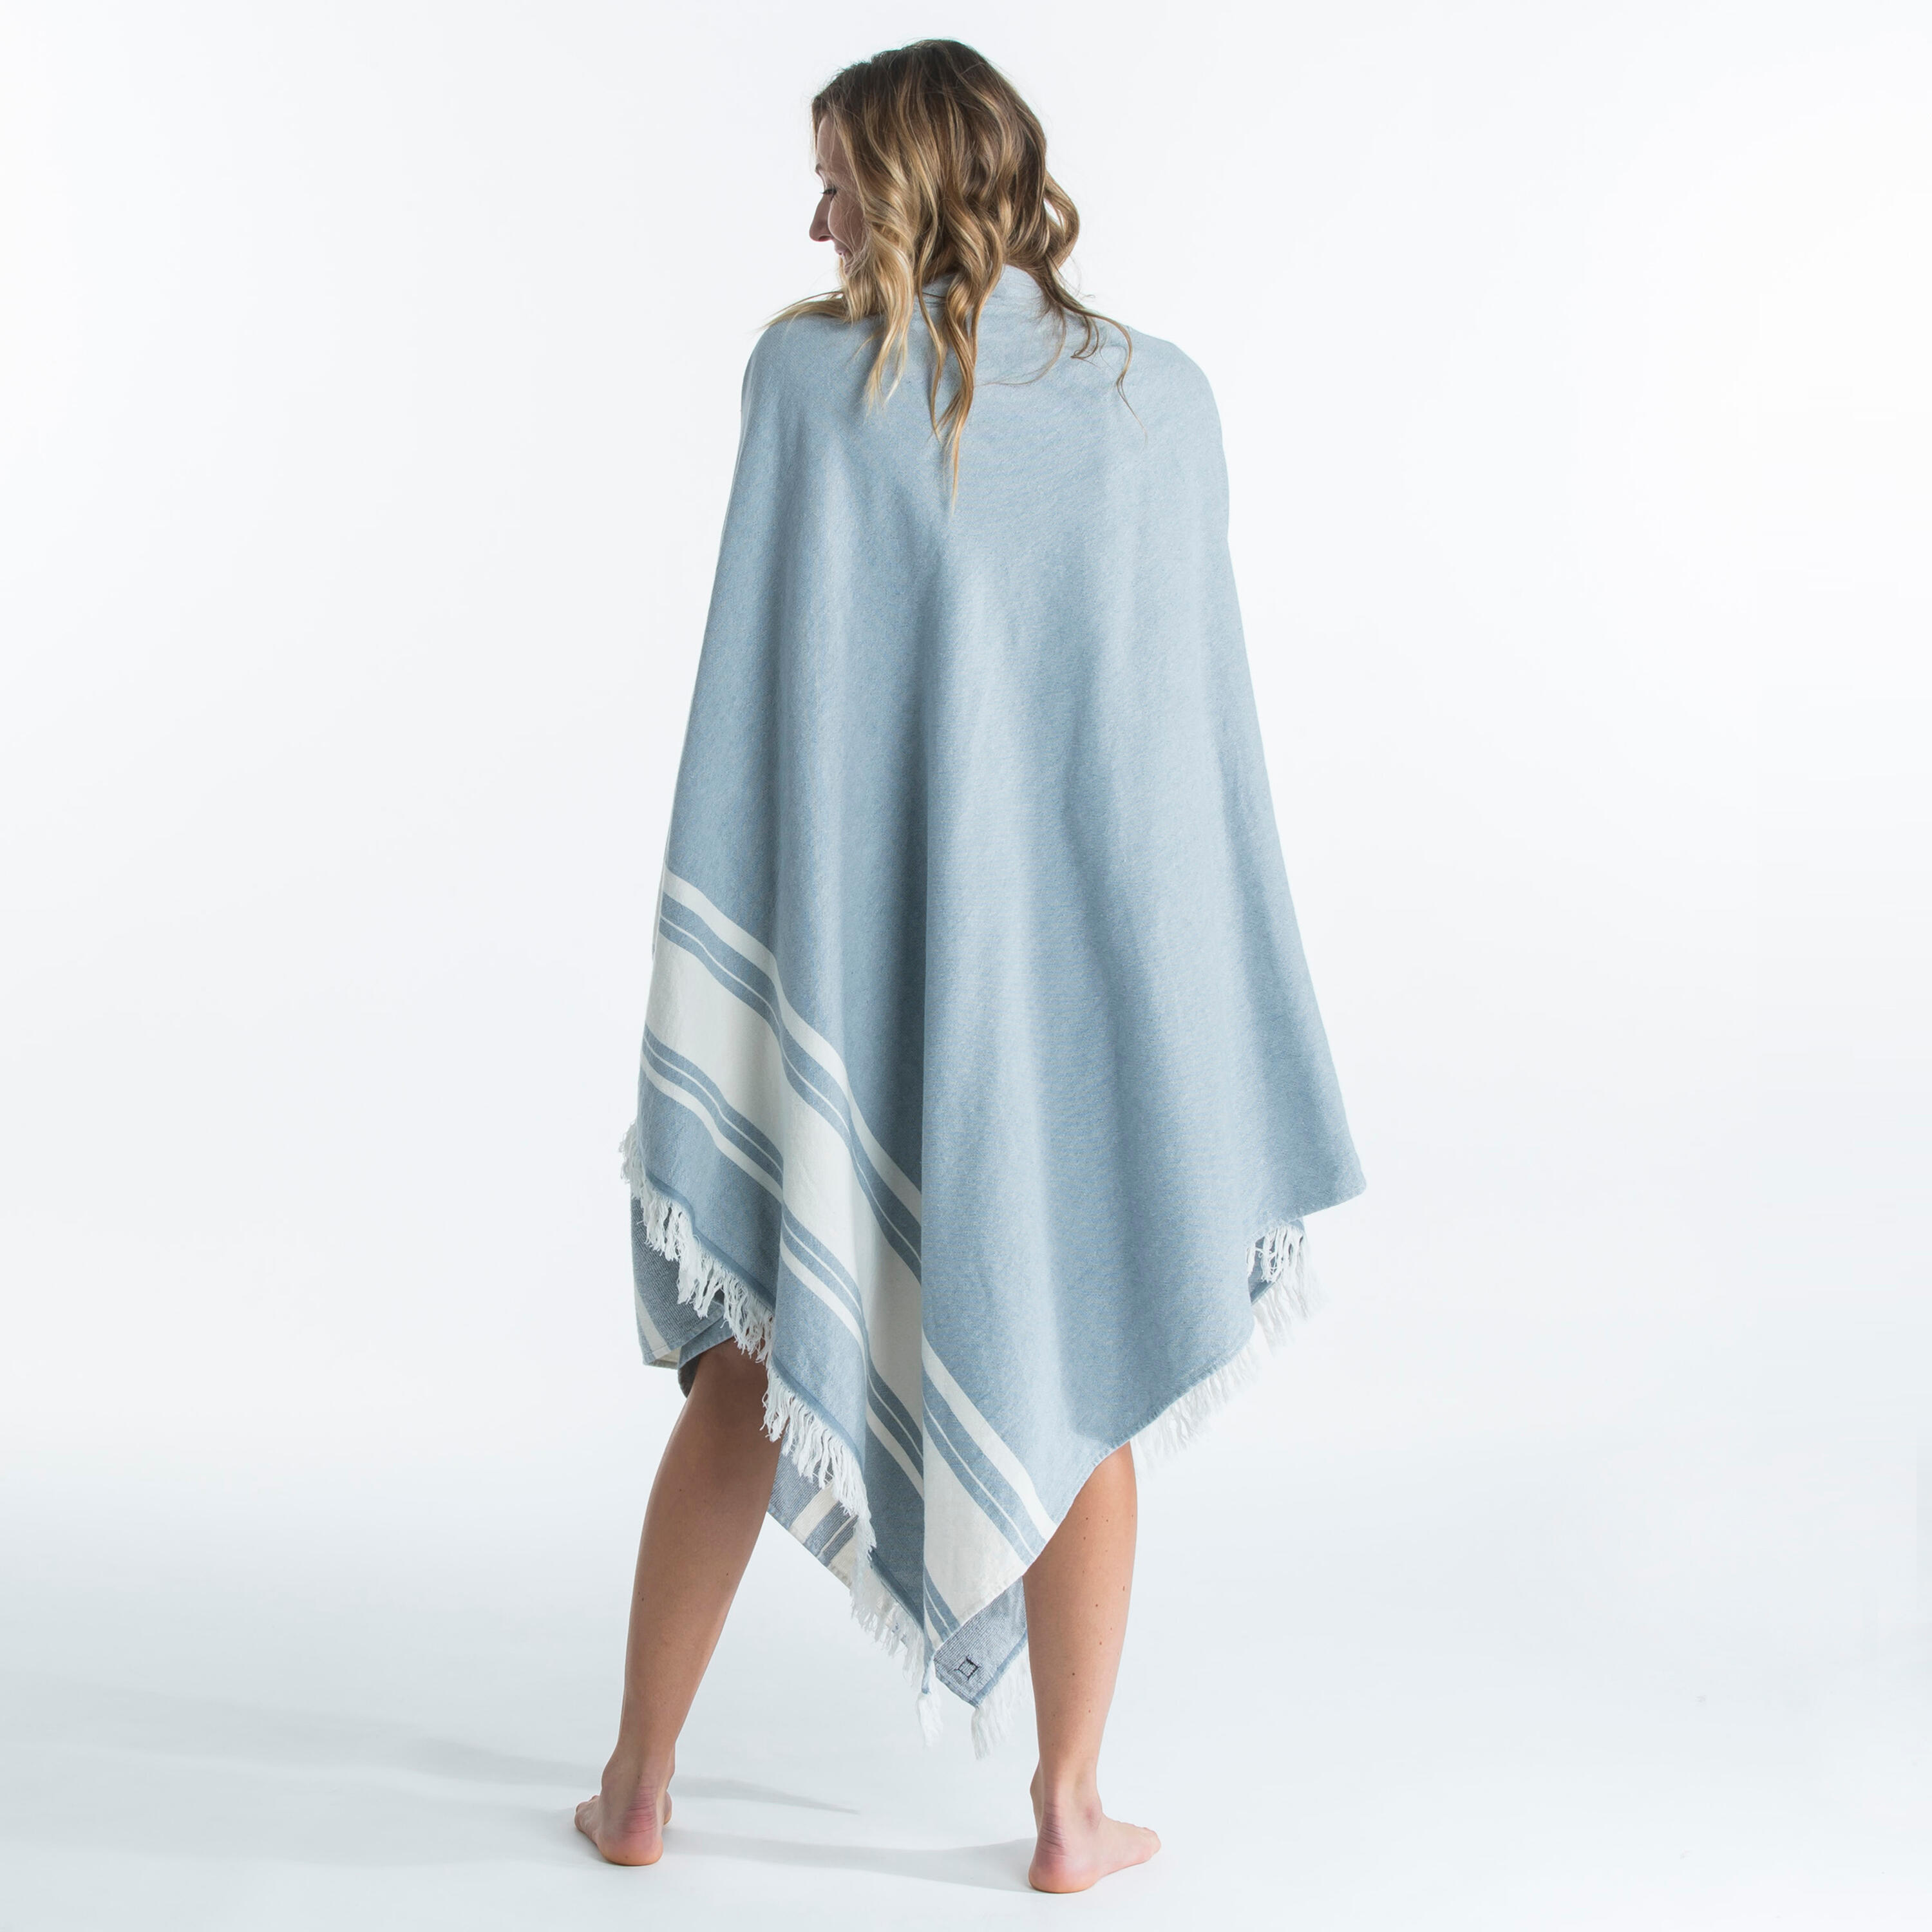 Beach towel poncho 190 x 190 cm - grey blue 3/19